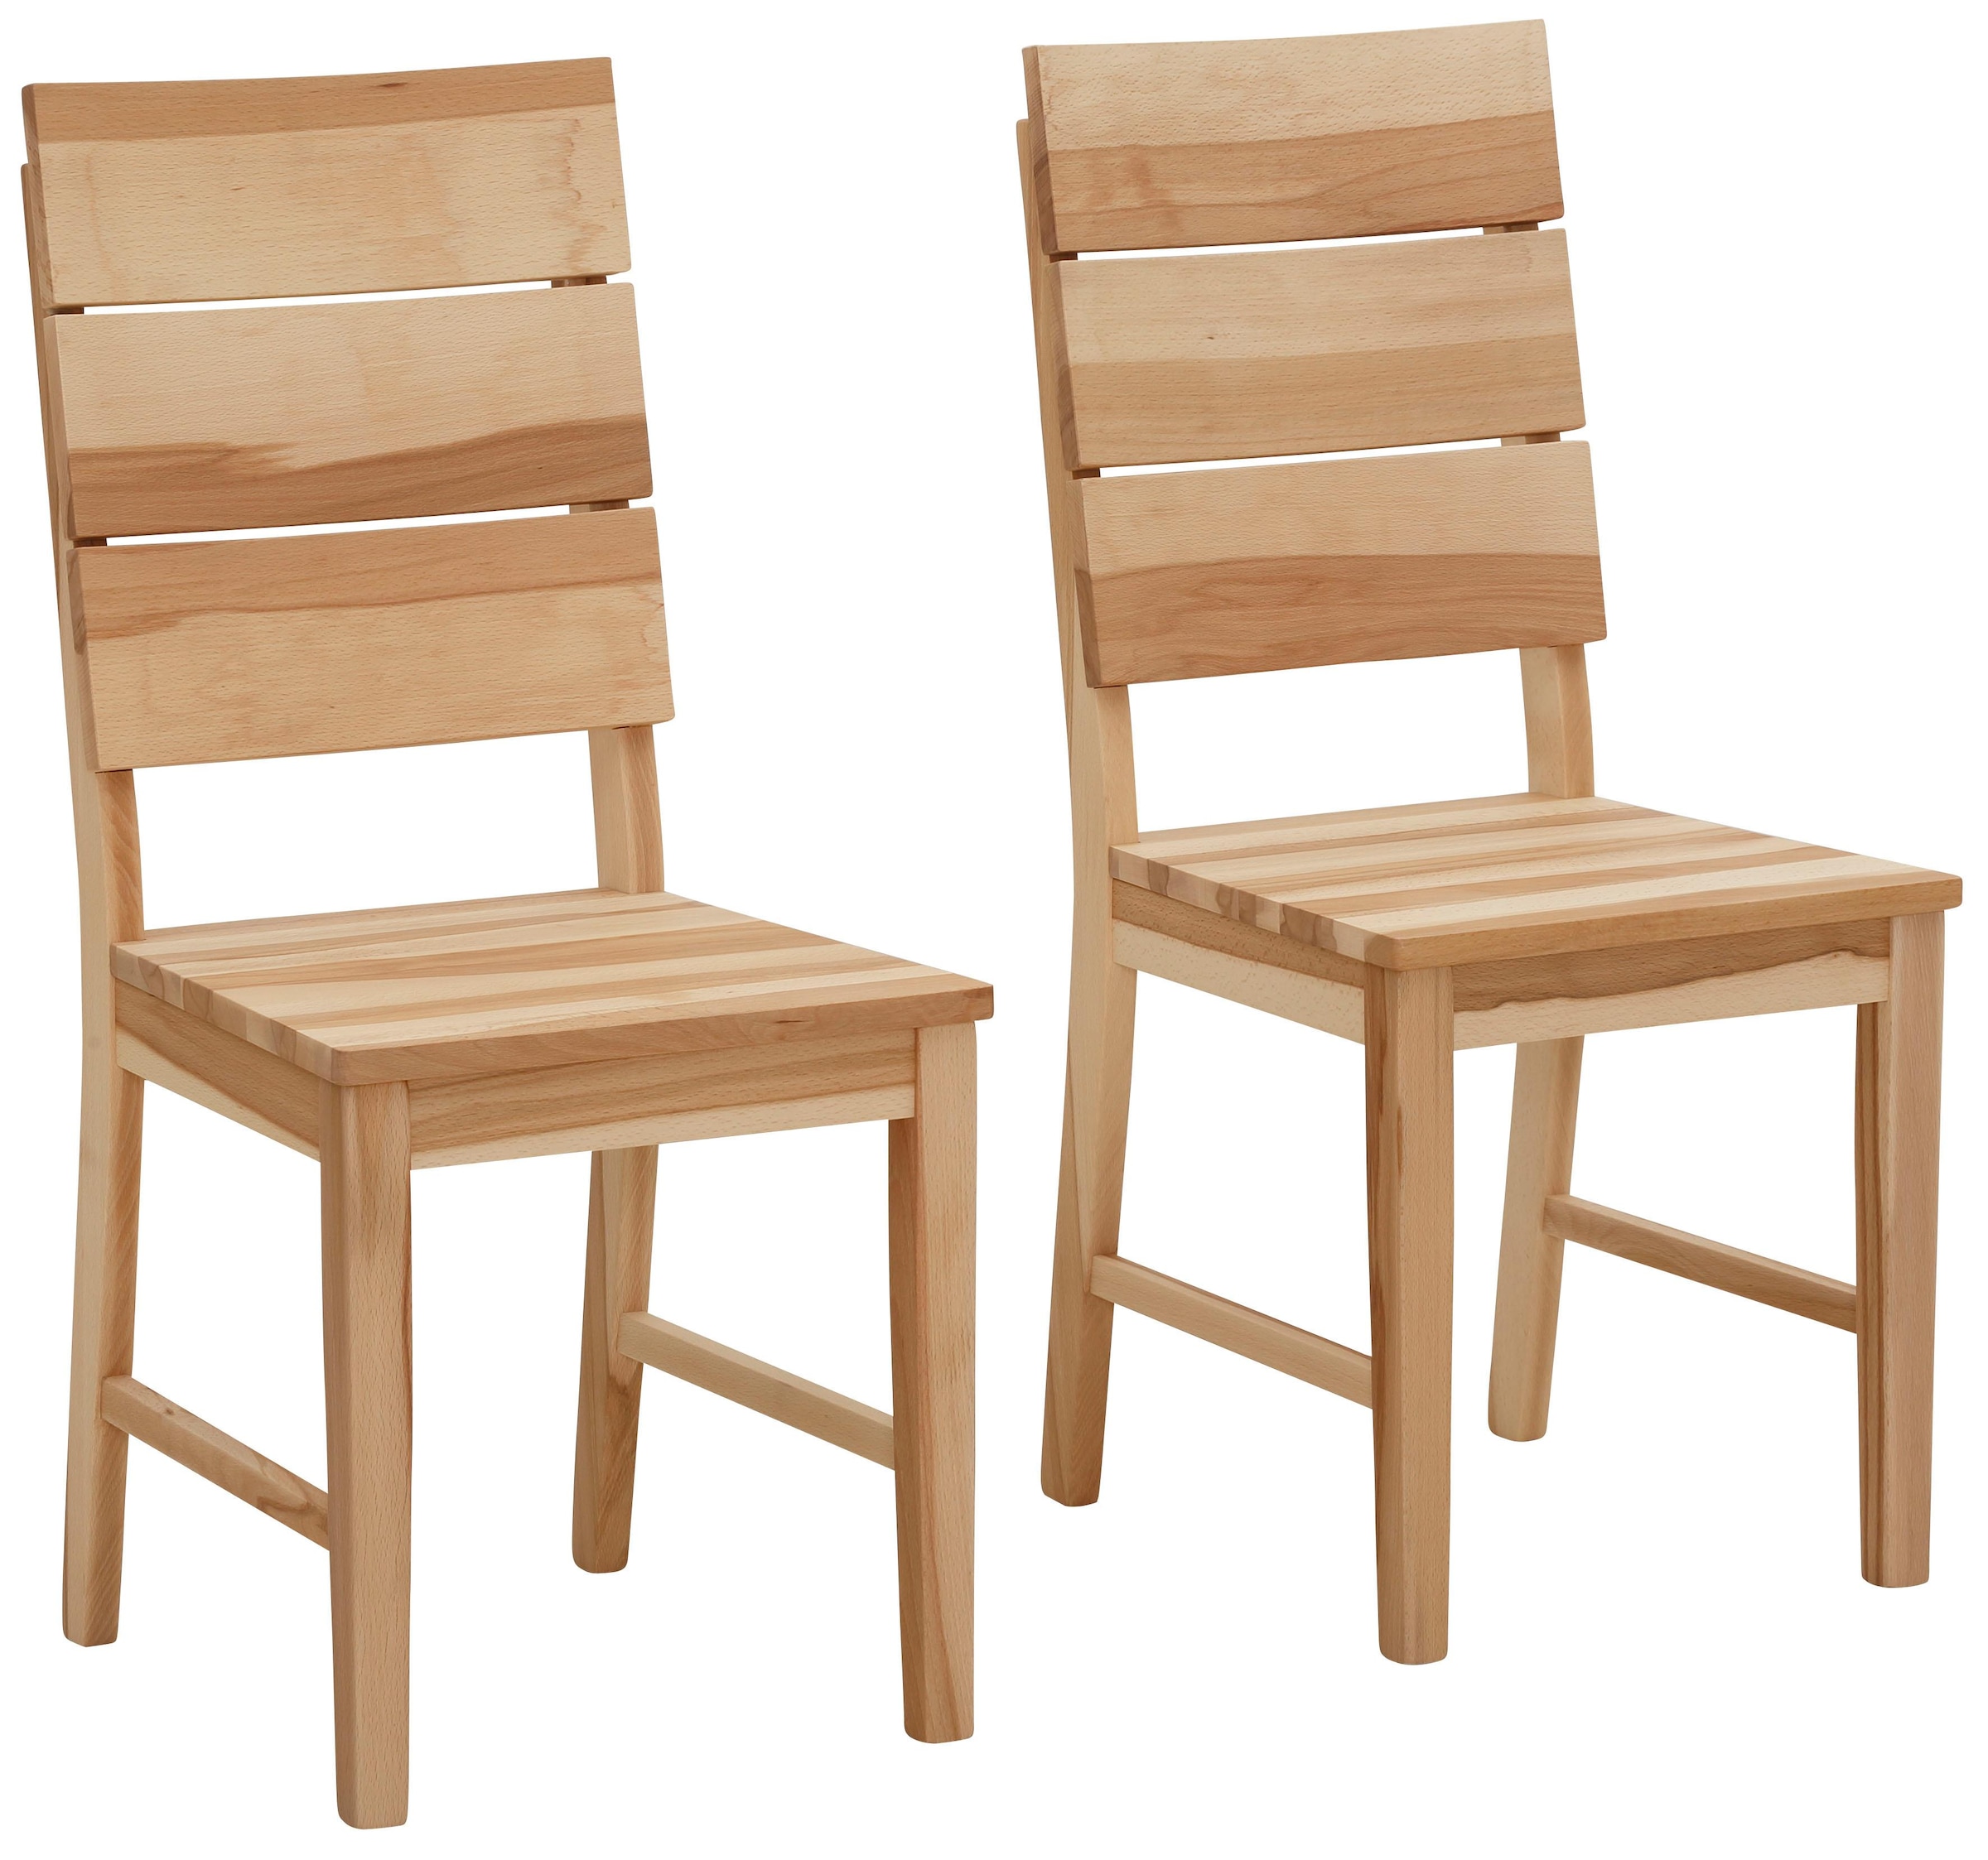 4-Fuss-Stühle online kaufen bei Ackermann | 4-Fuß-Stühle